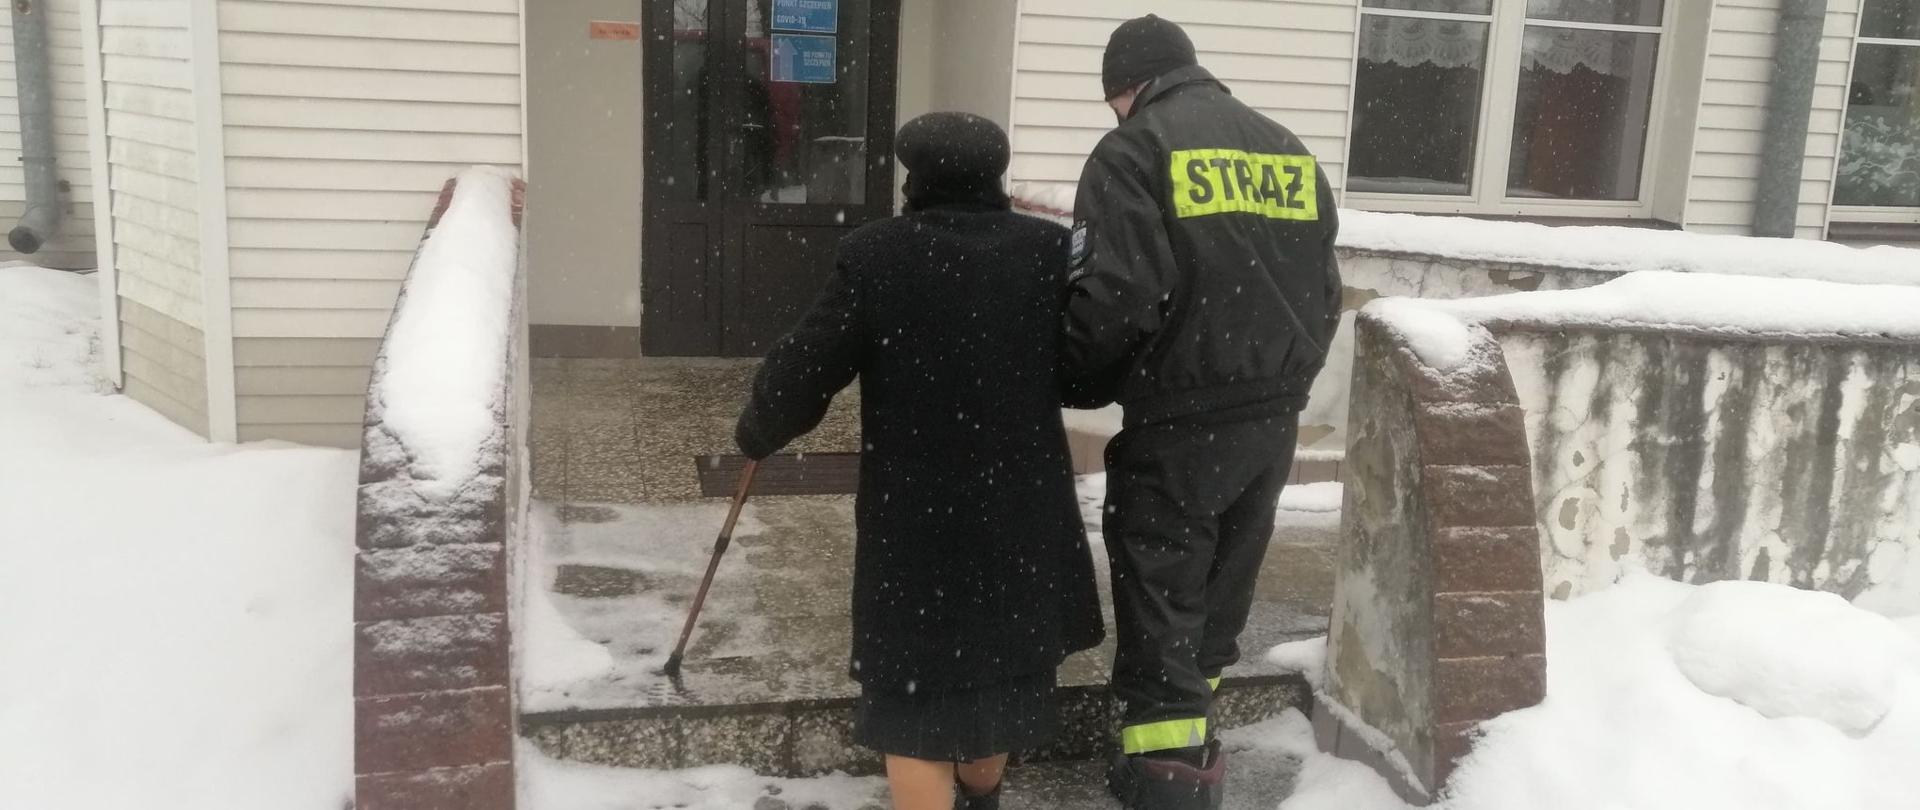 Strażak prowadzi starszą kobietę z laską po schodach do budynku przychodni